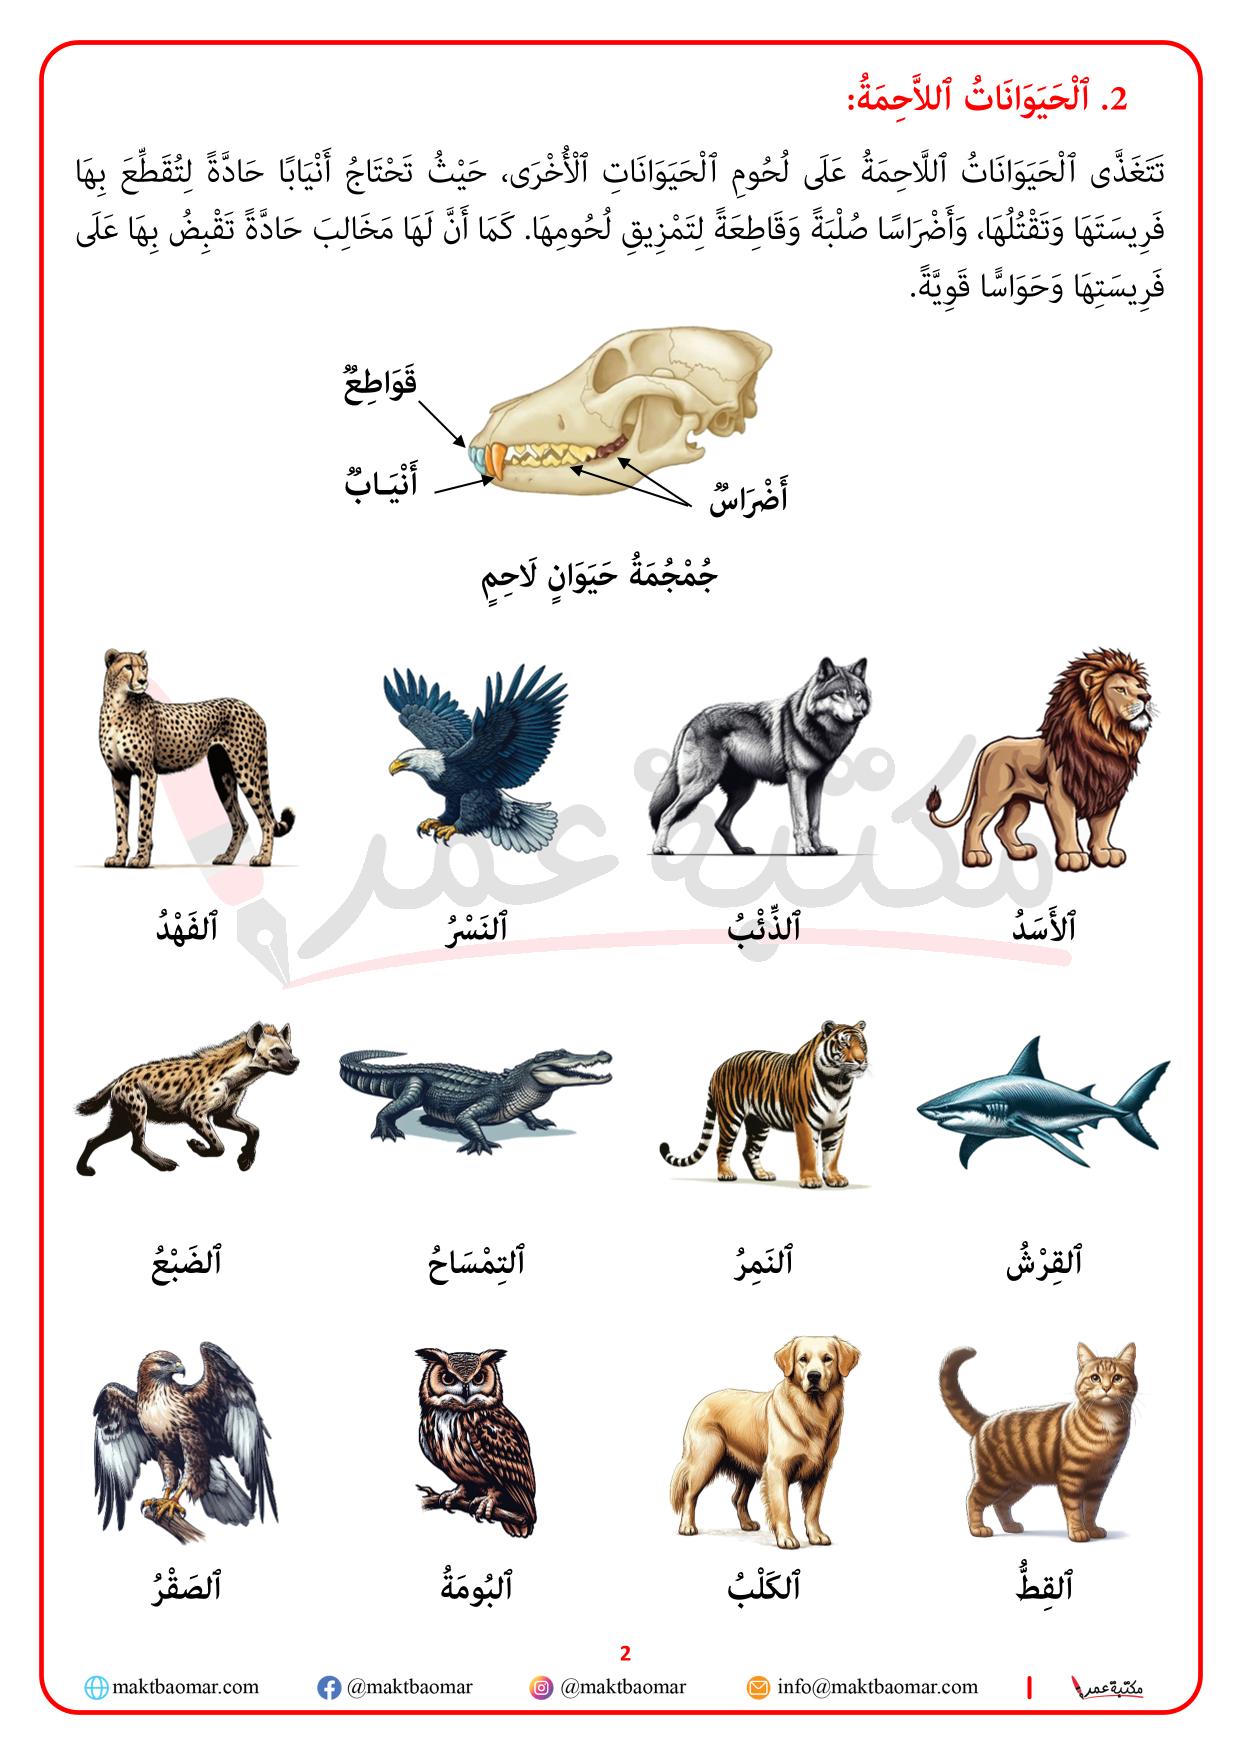 تصنيف الحيوانات حسب نوع الغذاء الذي تعيش عليه-2